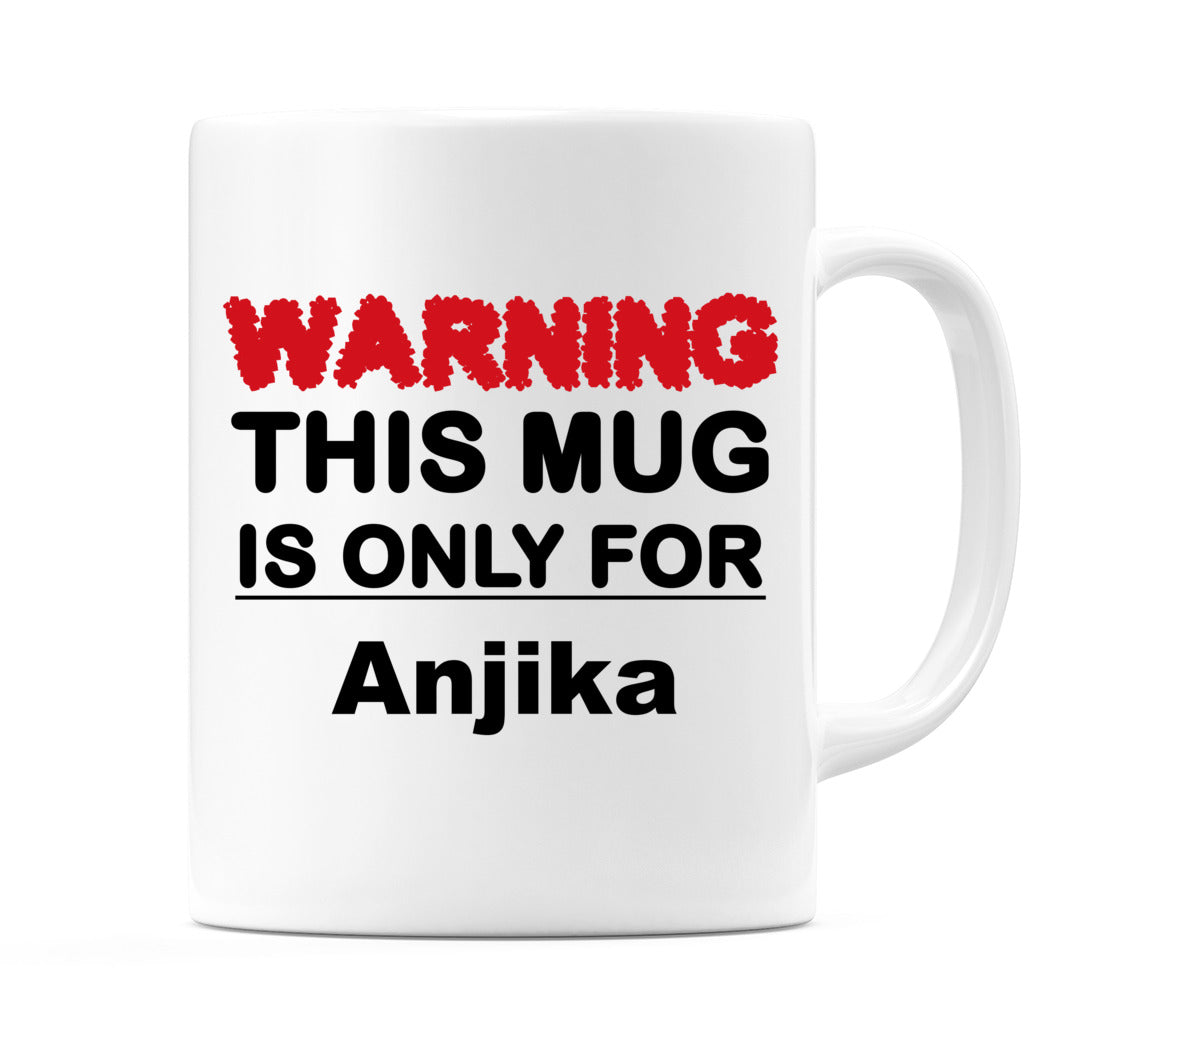 Warning This Mug is ONLY for Anjika Mug